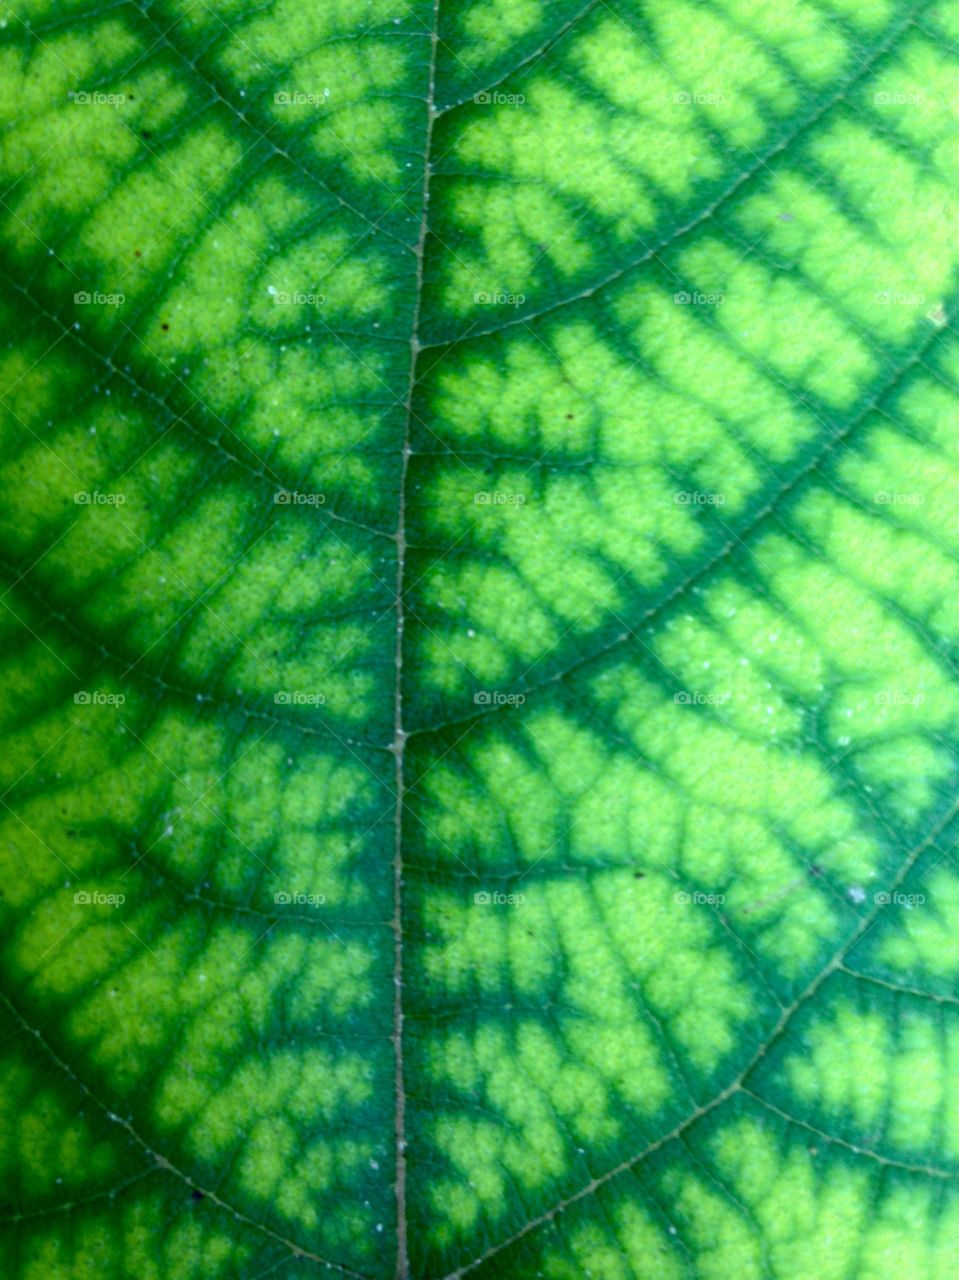 Leaf texture 3